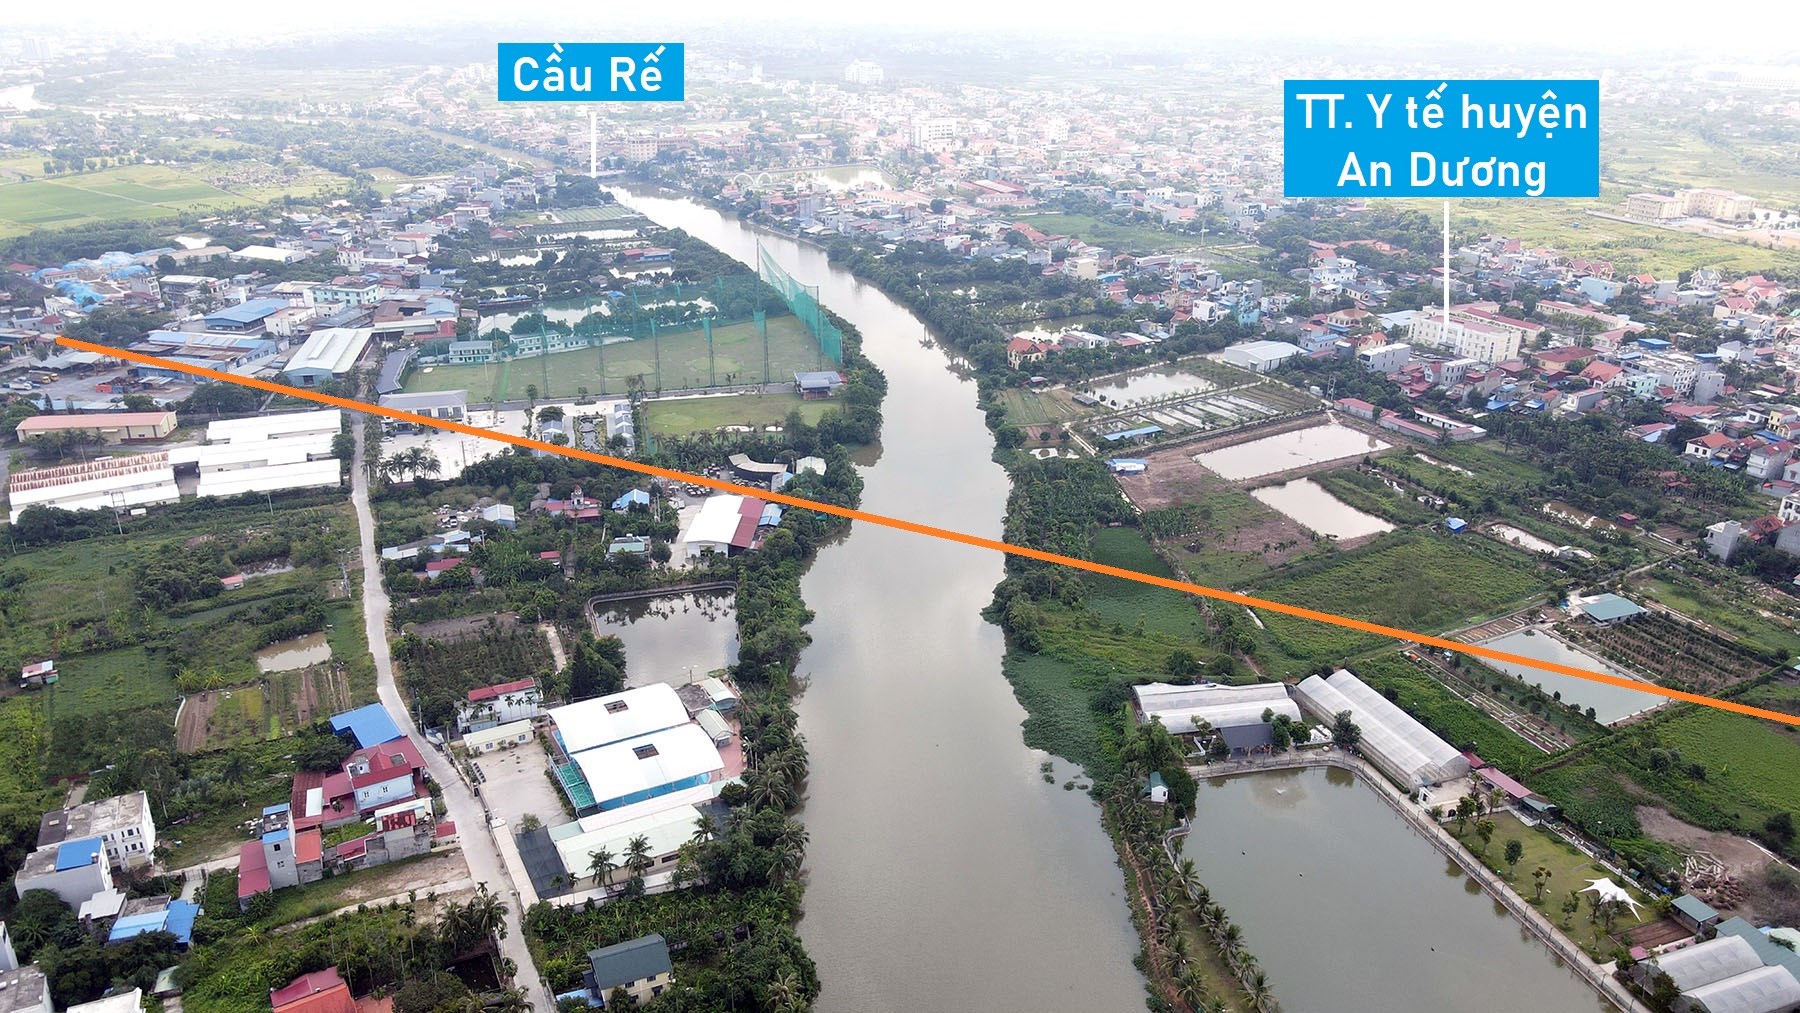 Toàn cảnh vị trí dự kiến quy hoạch cầu vượt sông Rế nối đường 208 với quốc lộ 5, huyện An Dương, TP Hải Phòng